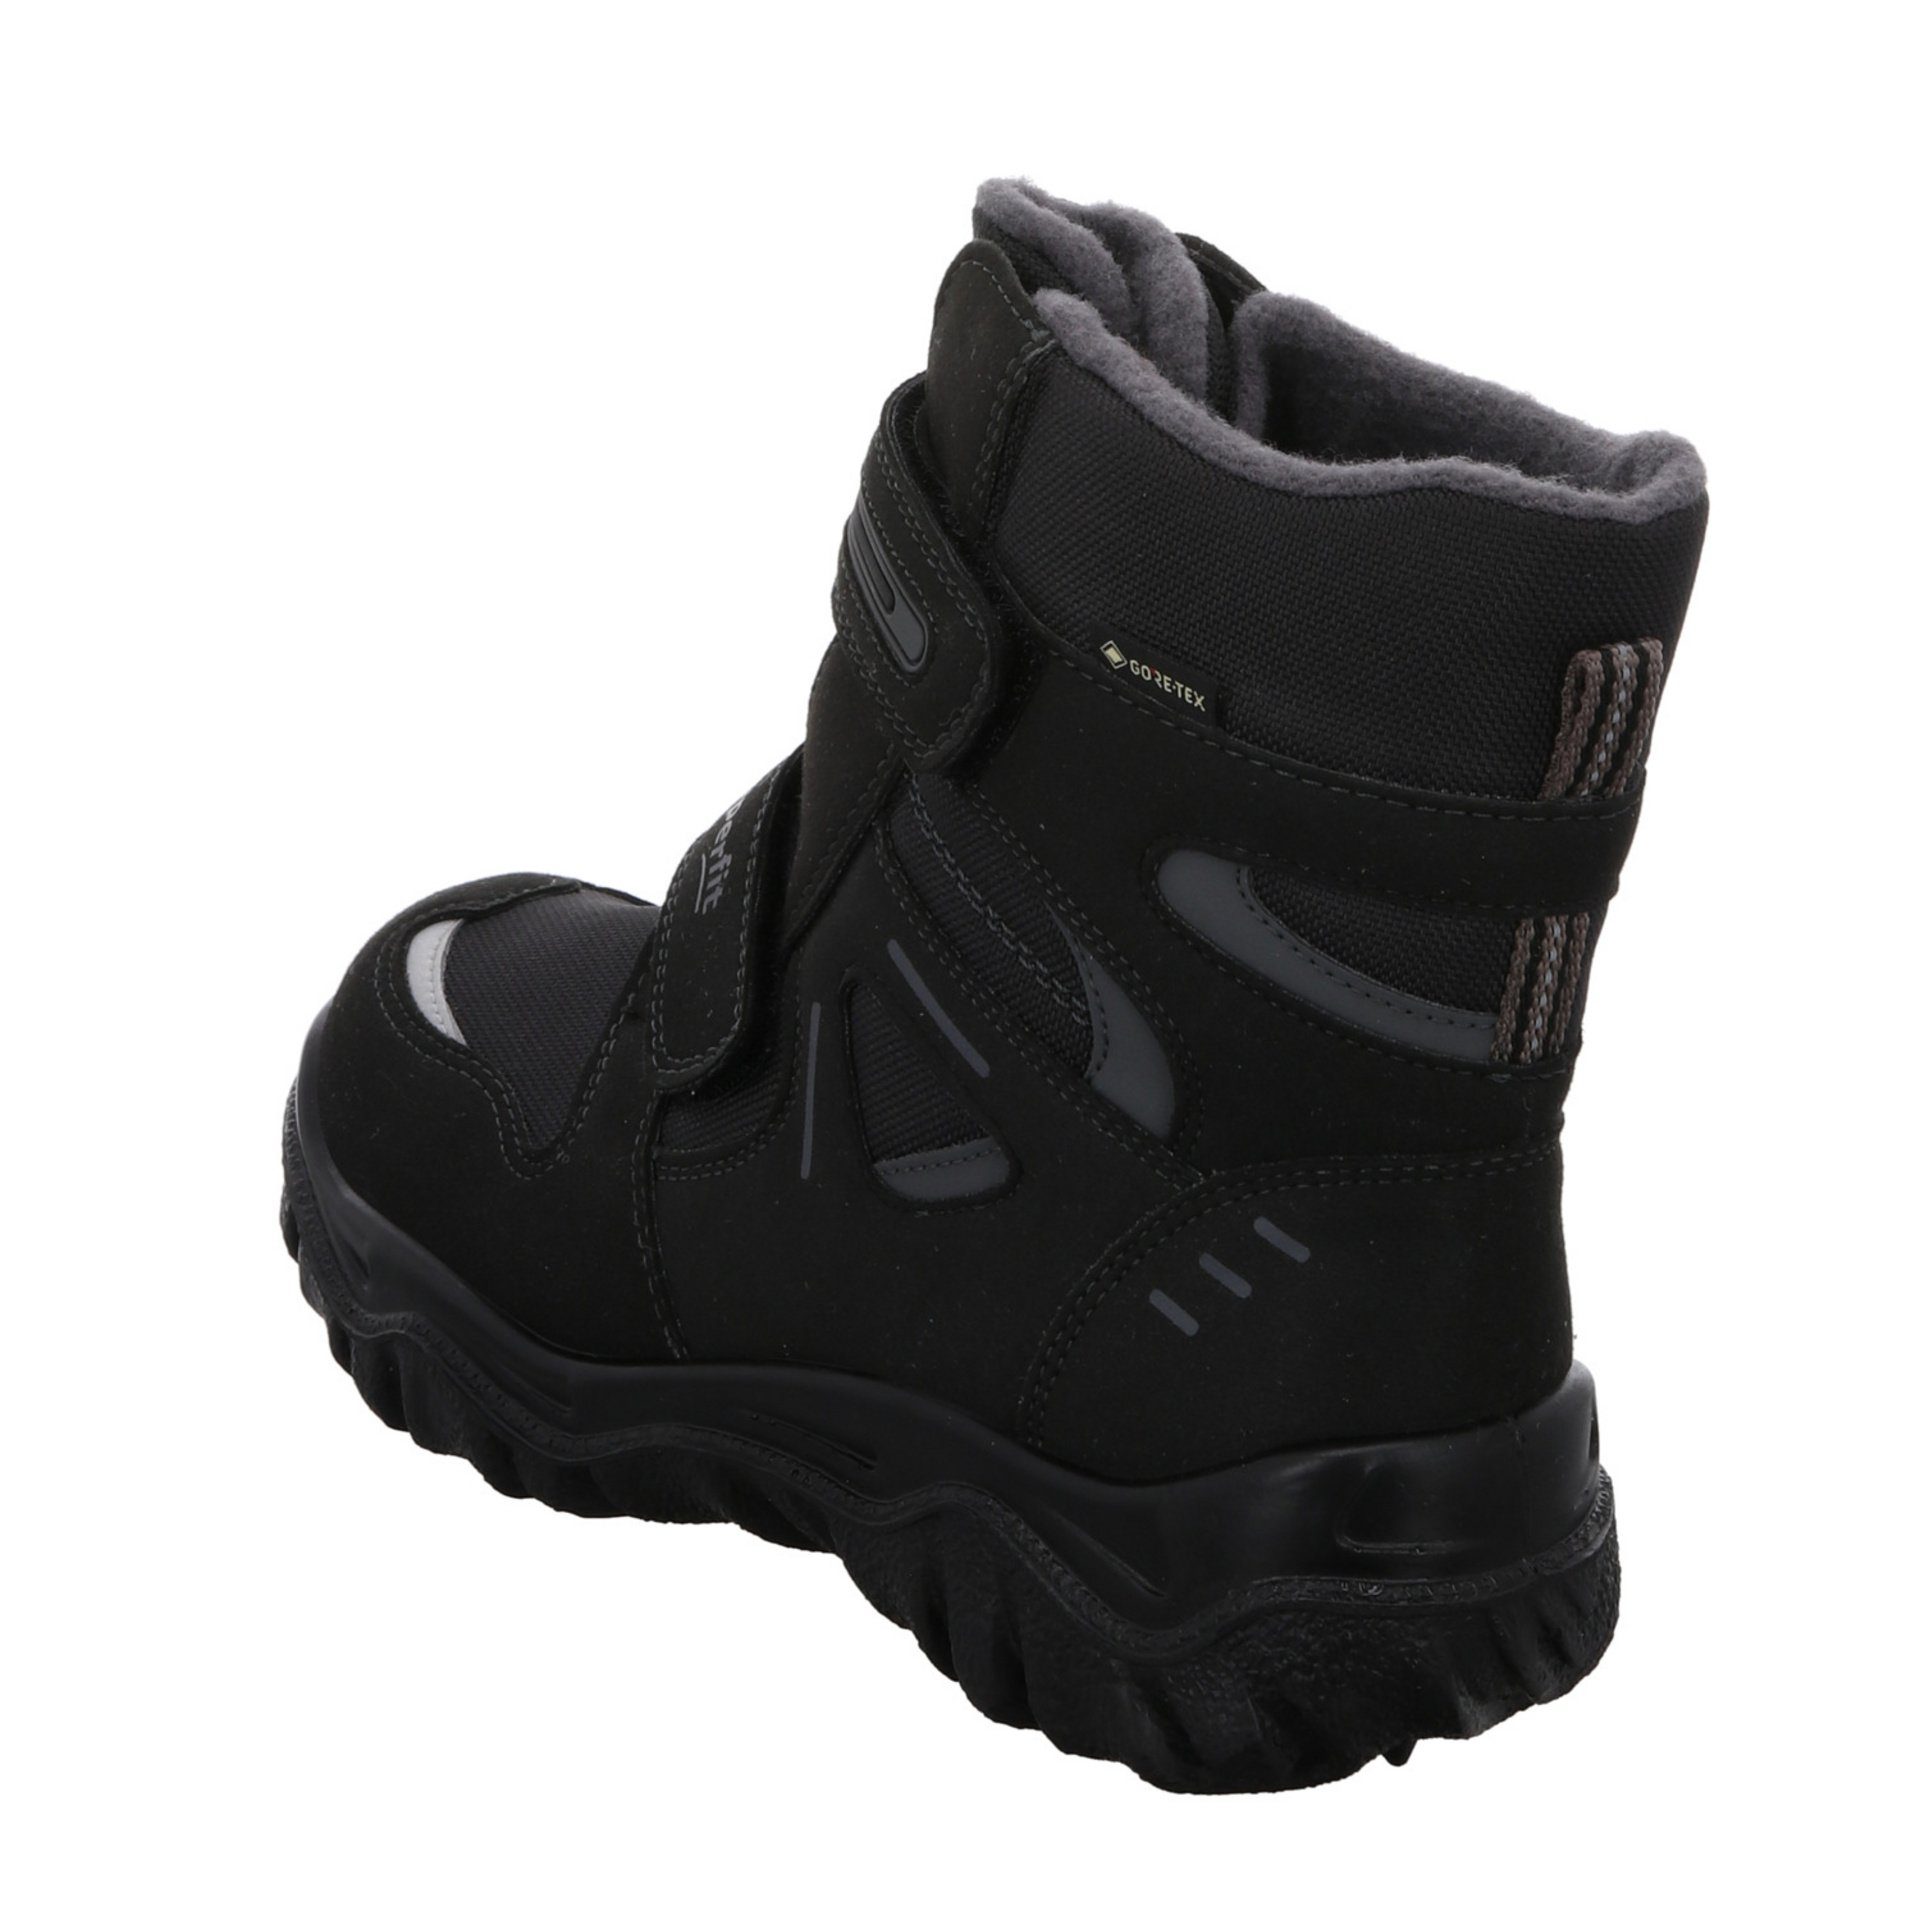 Husky schwarz Stiefel grau Jungen Gore-Tex Superfit Stiefel Synthetikkombination 2 Schuhe Boots